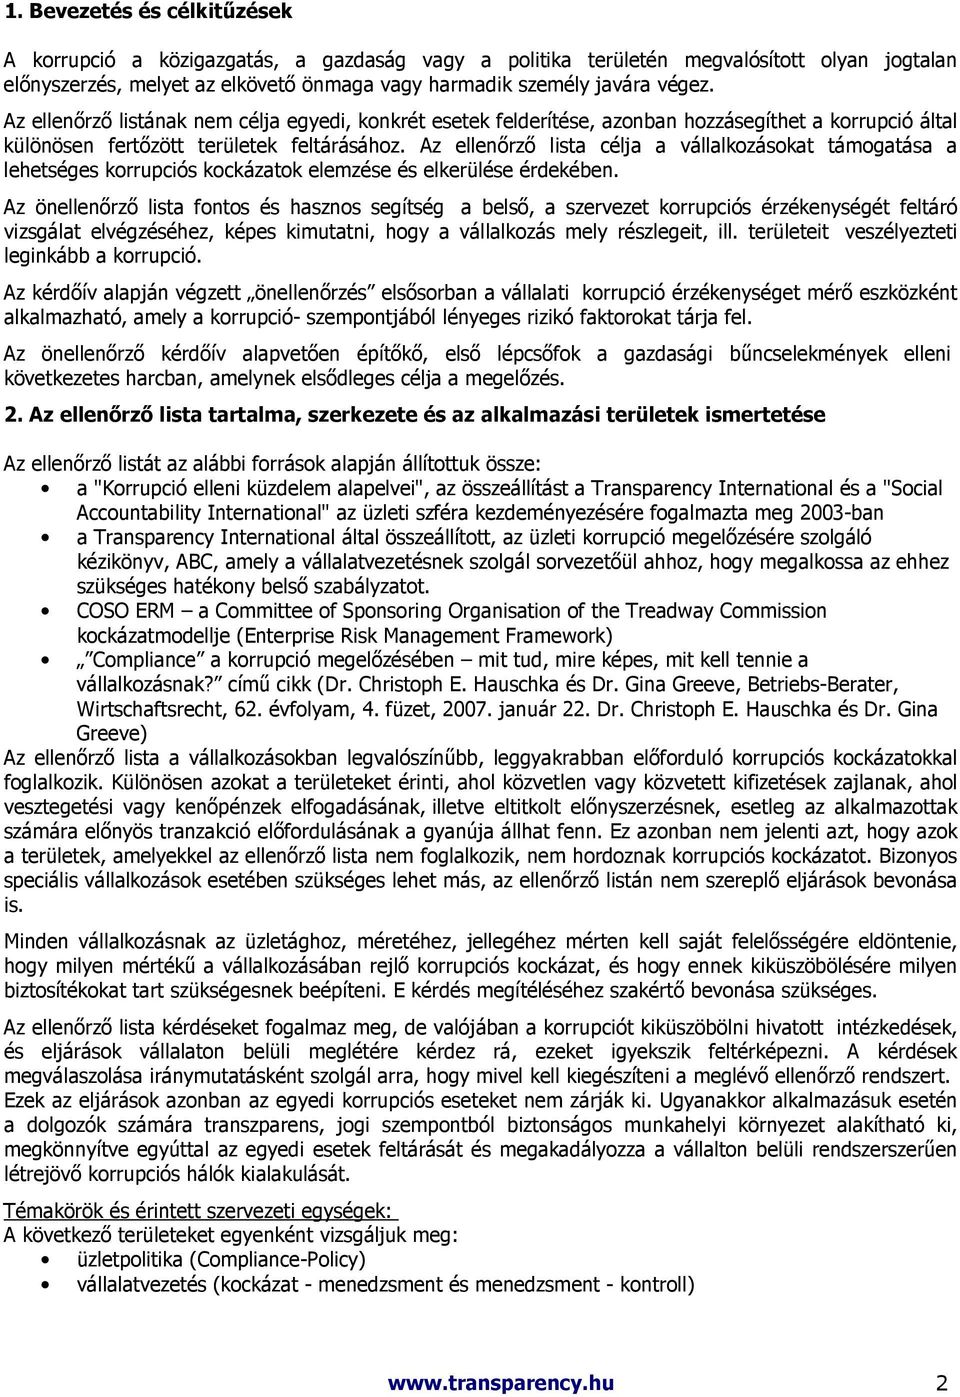 Az ellenırzı lista célja a vállalkozásokat támogatása a lehetséges korrupciós kockázatok elemzése és elkerülése érdekében.